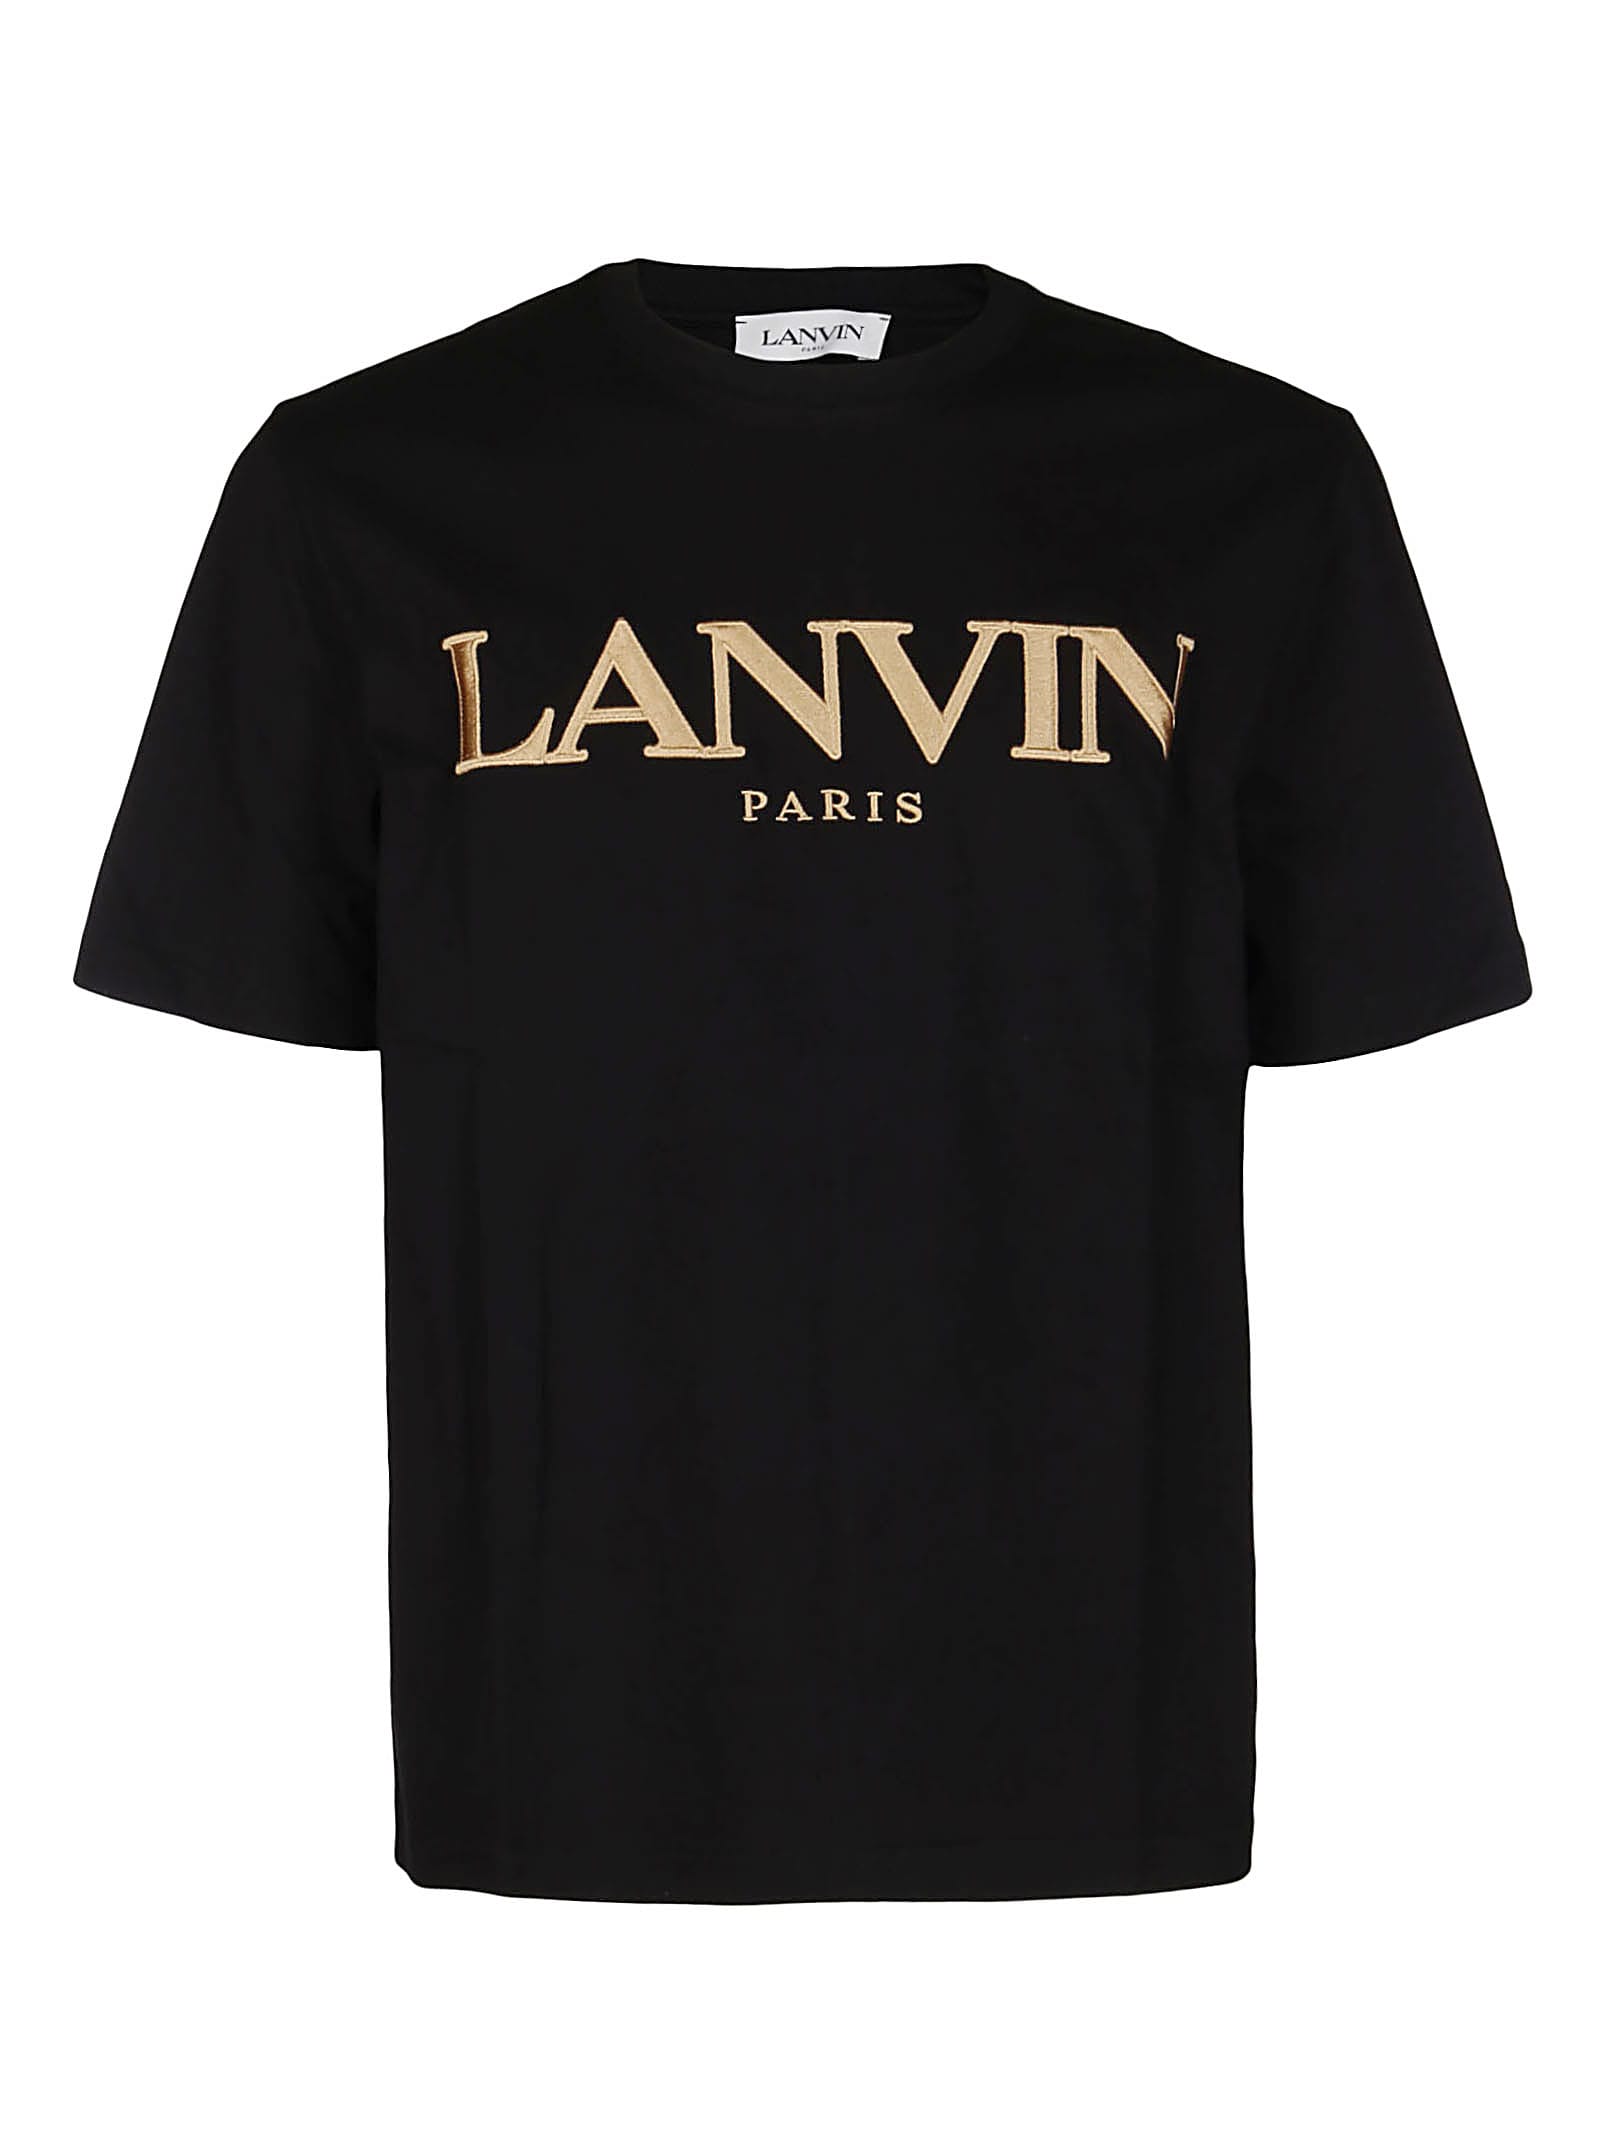 Lanvin Black Cotton T-shirt